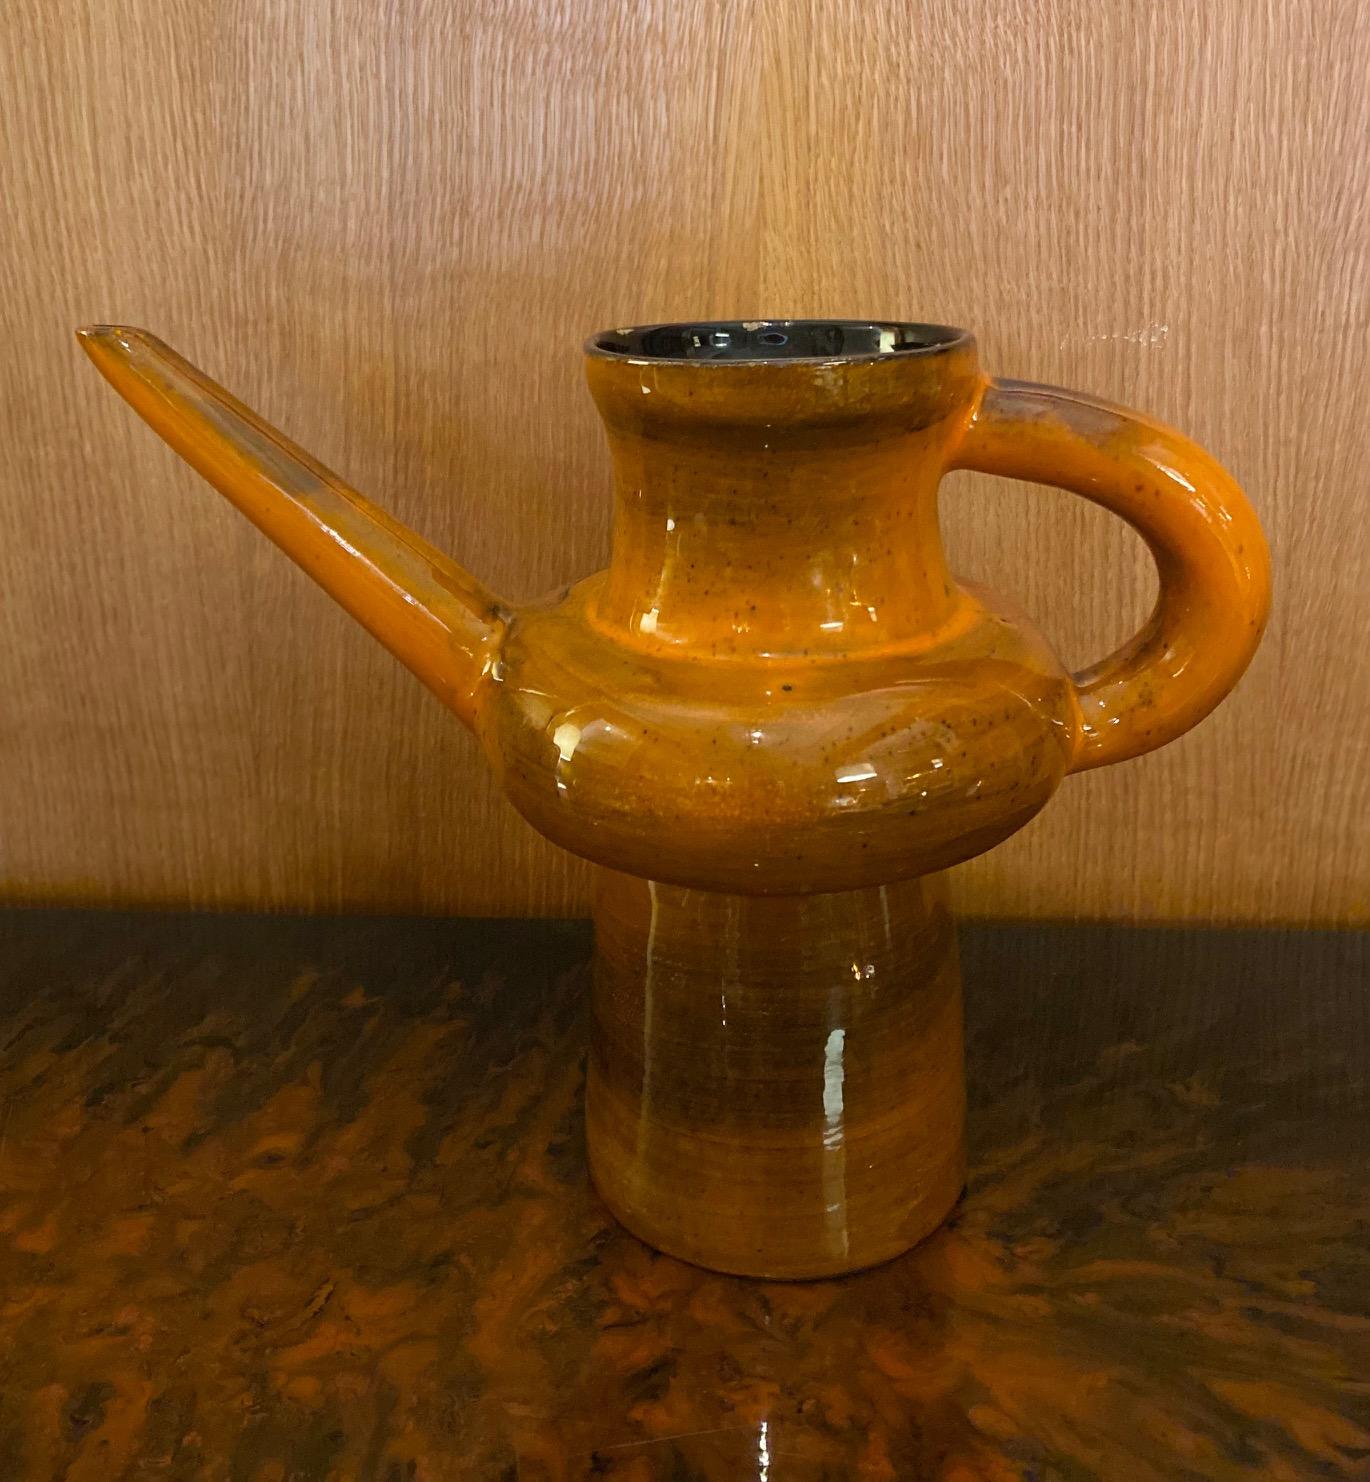 Vase en céramique en forme d'arrosoir par Jean de Lespinasse
Émail orange
Signé 